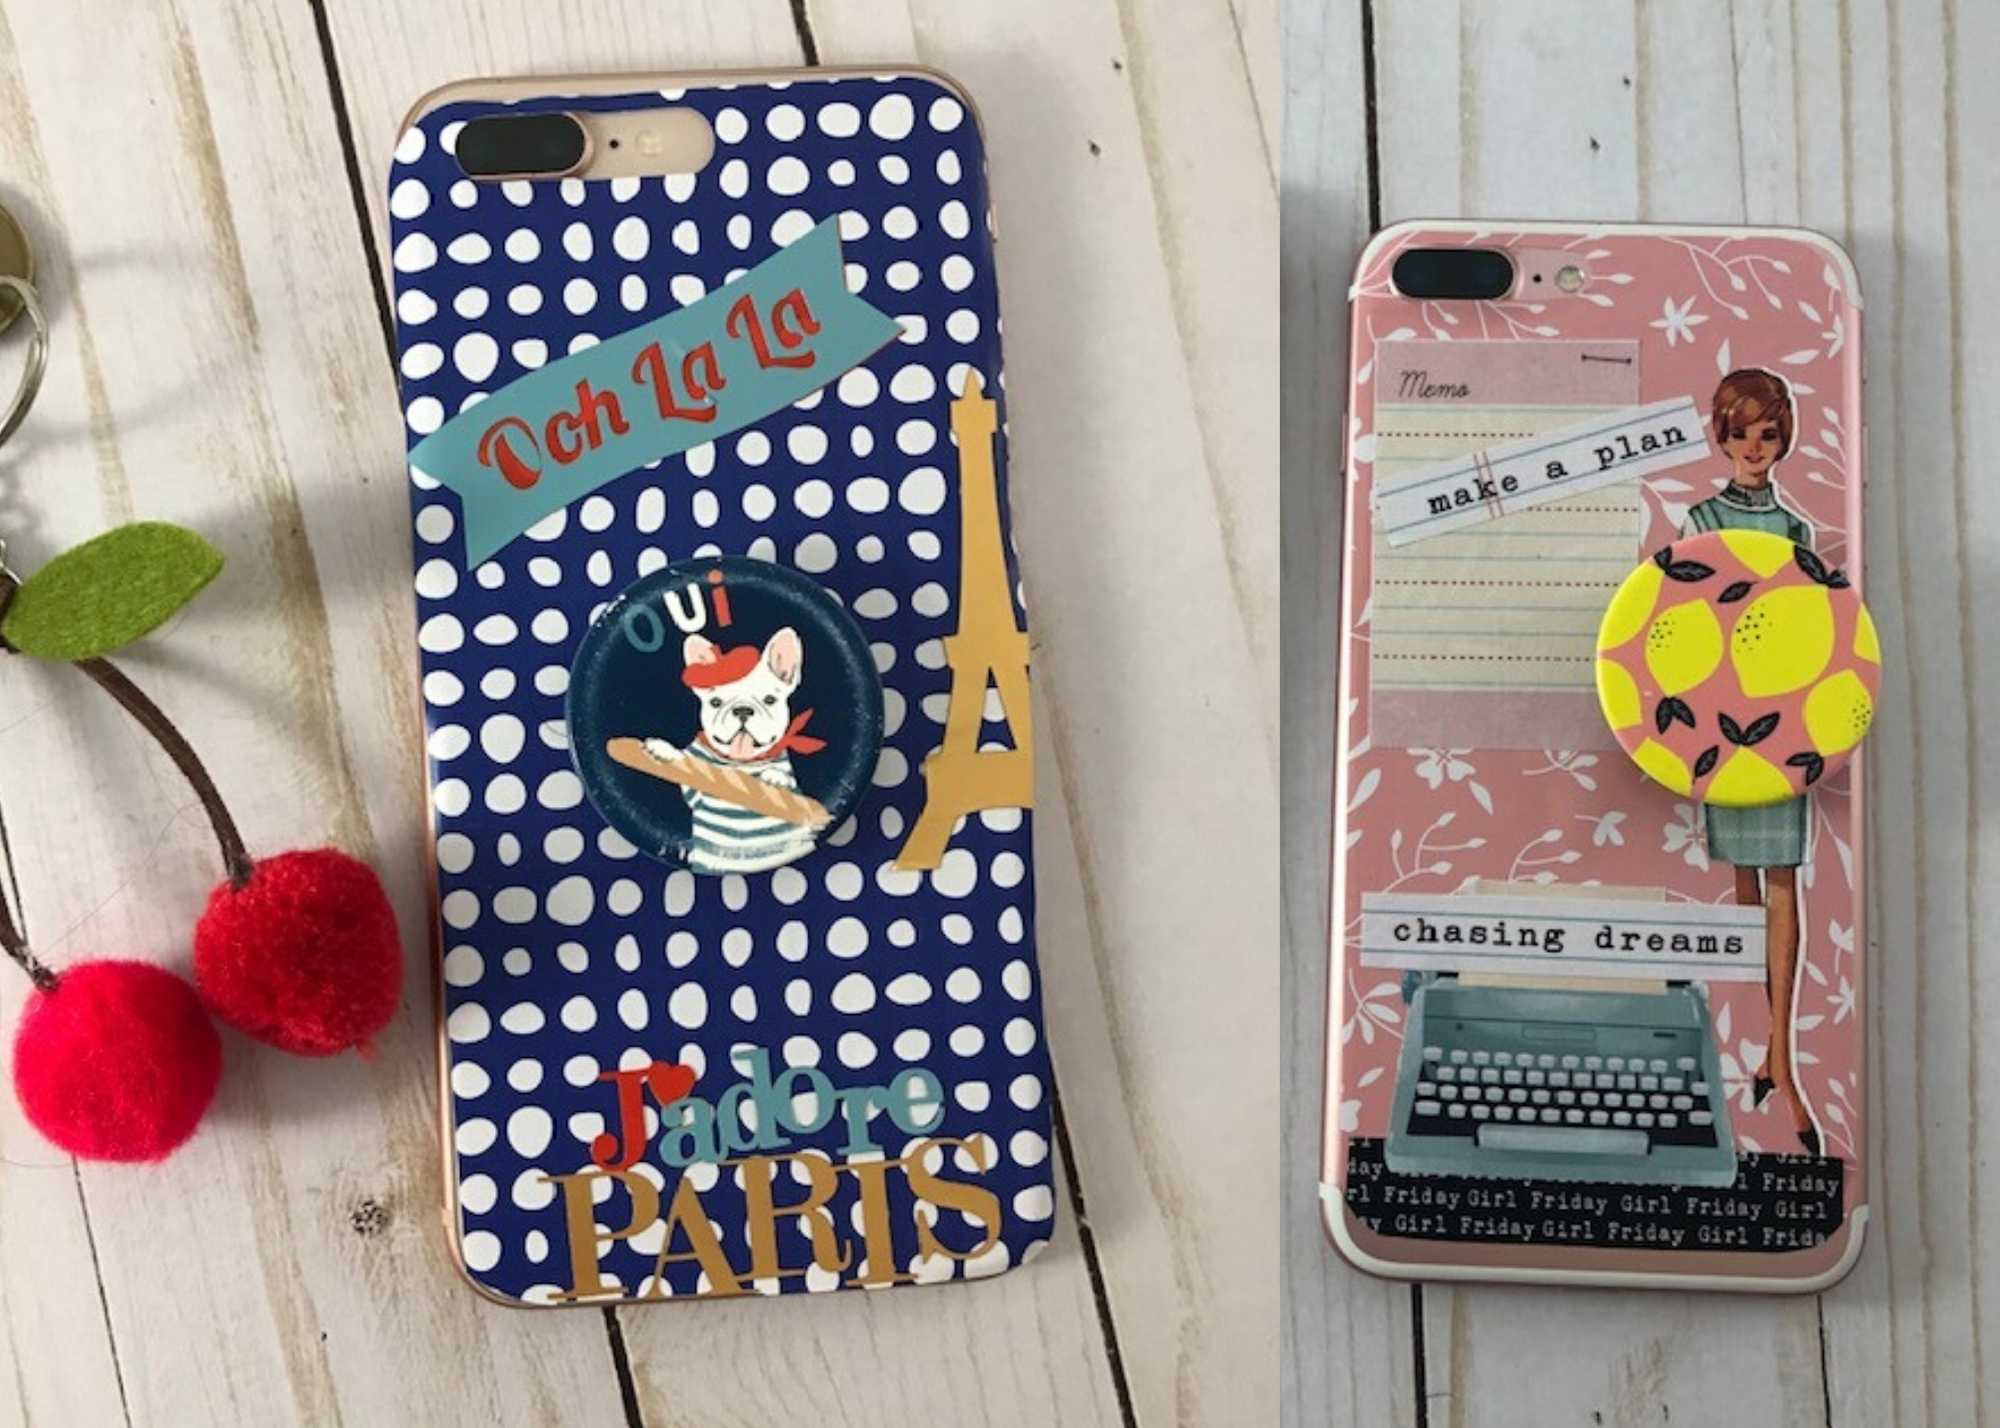 DIY Phone Covers Designing-creative ideas Tutorials